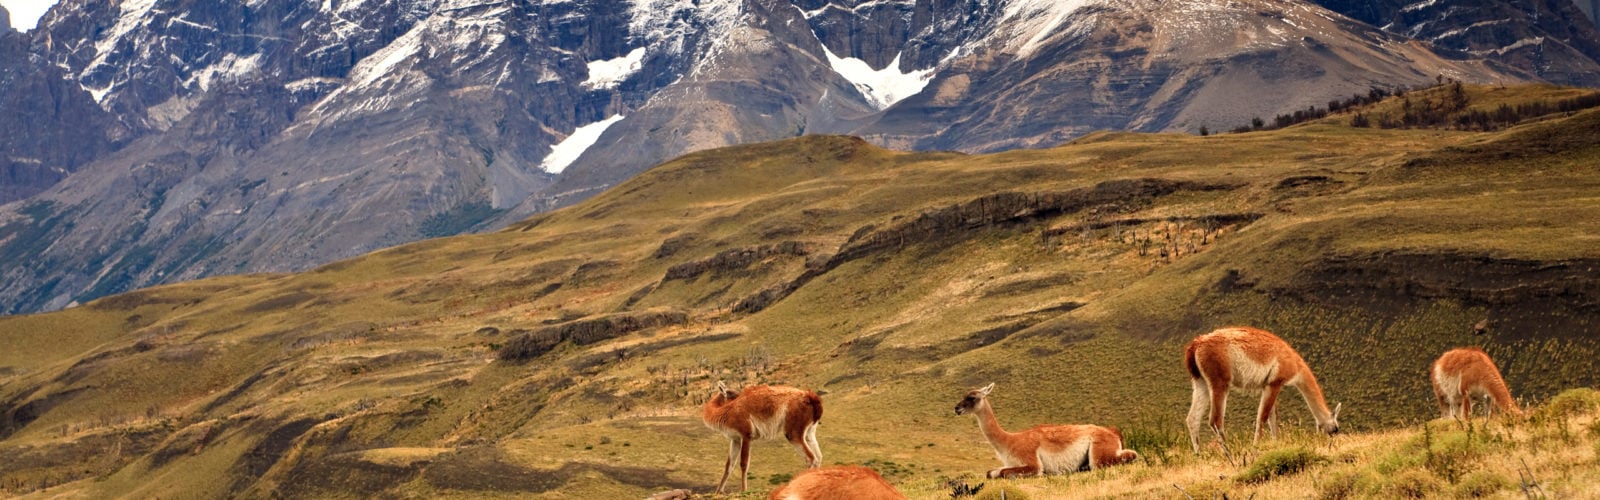 Guanaco Herd in Torres del Paine Mountain Range